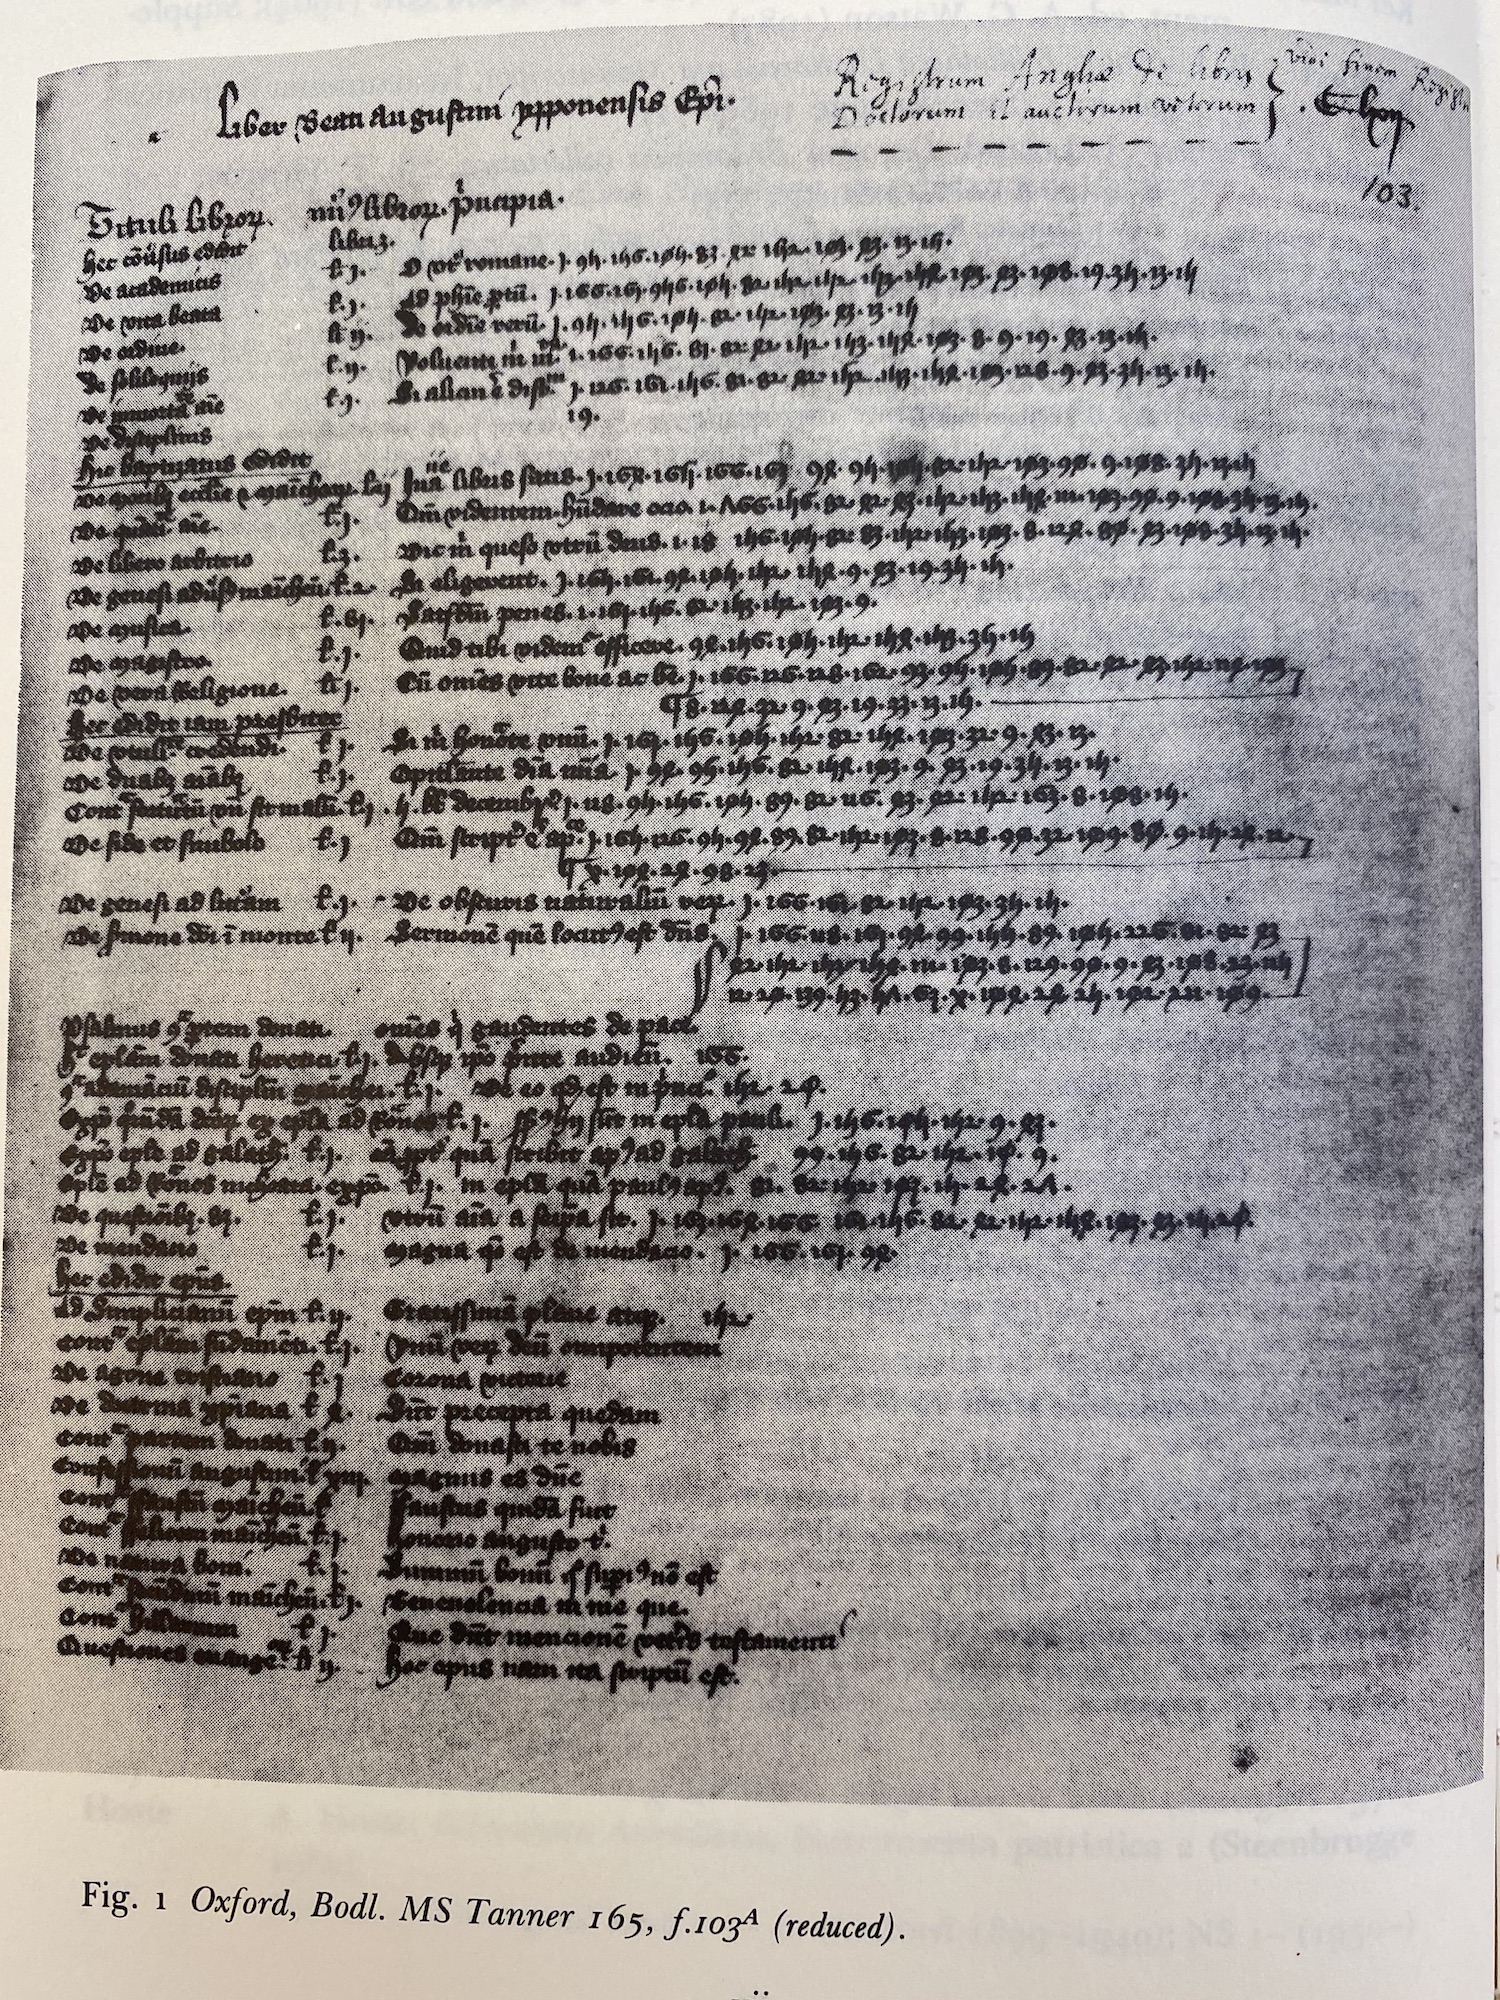 Registrum Anglie de libris doctorum reproduction from Rouse edition